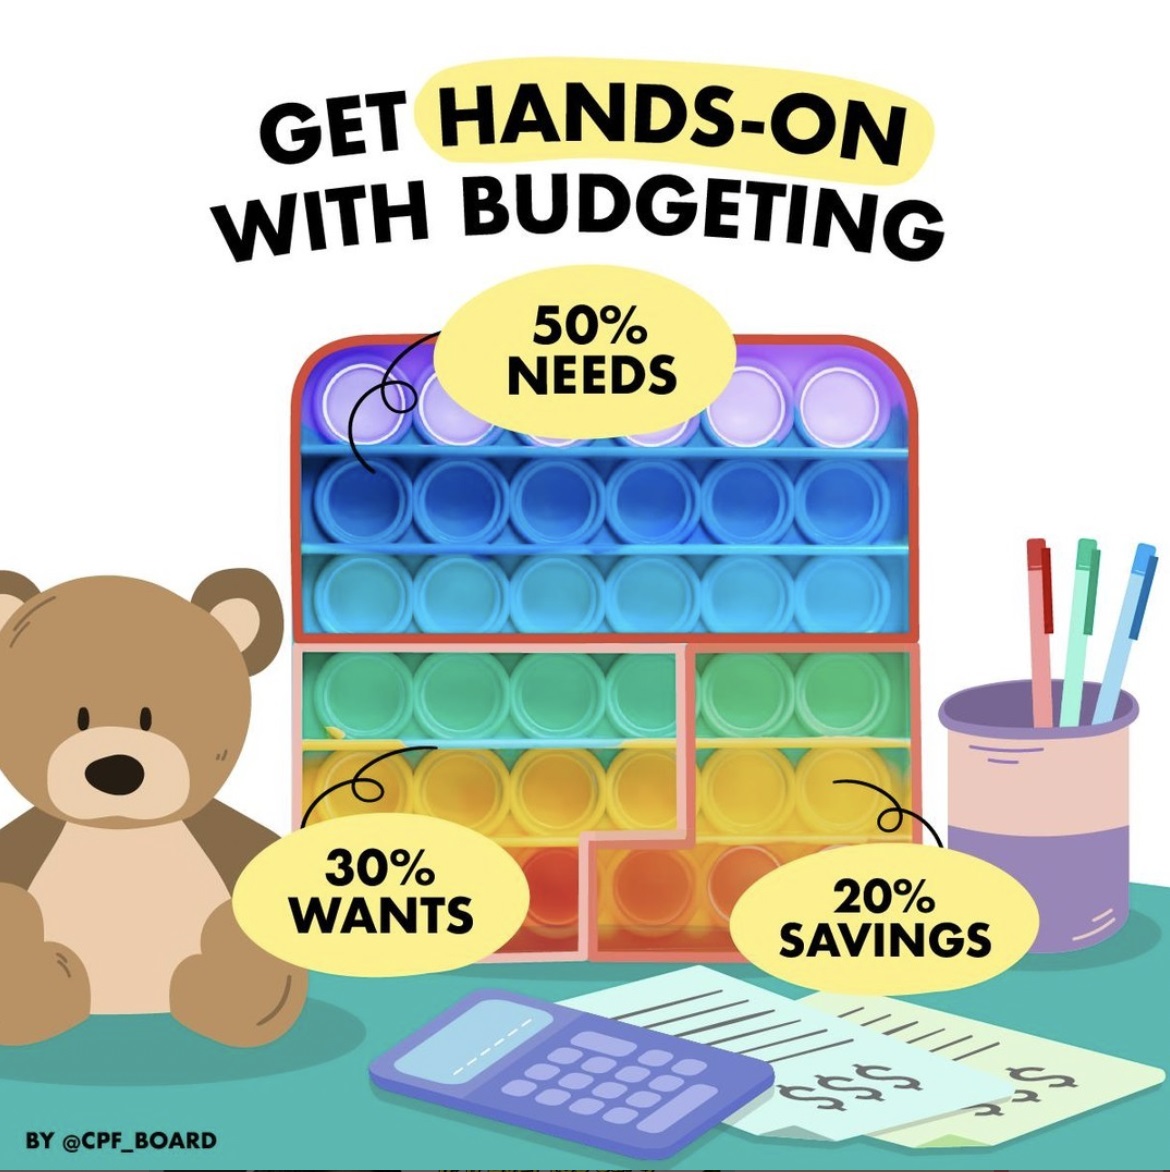 50-30-20 budgeting rule